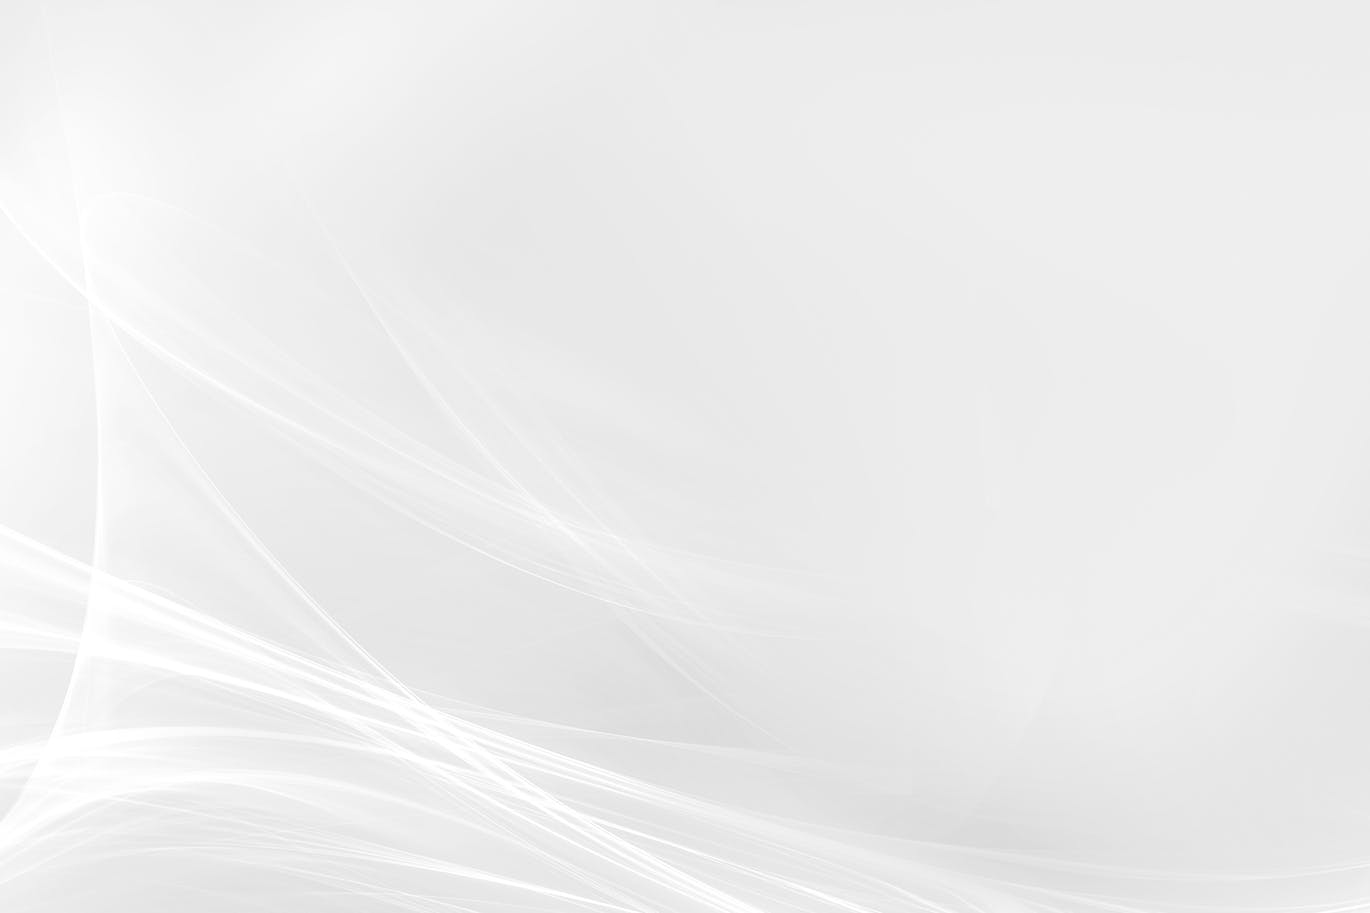 超高清抽象波浪线白色背景素材abstract White Background 大洋岛素材